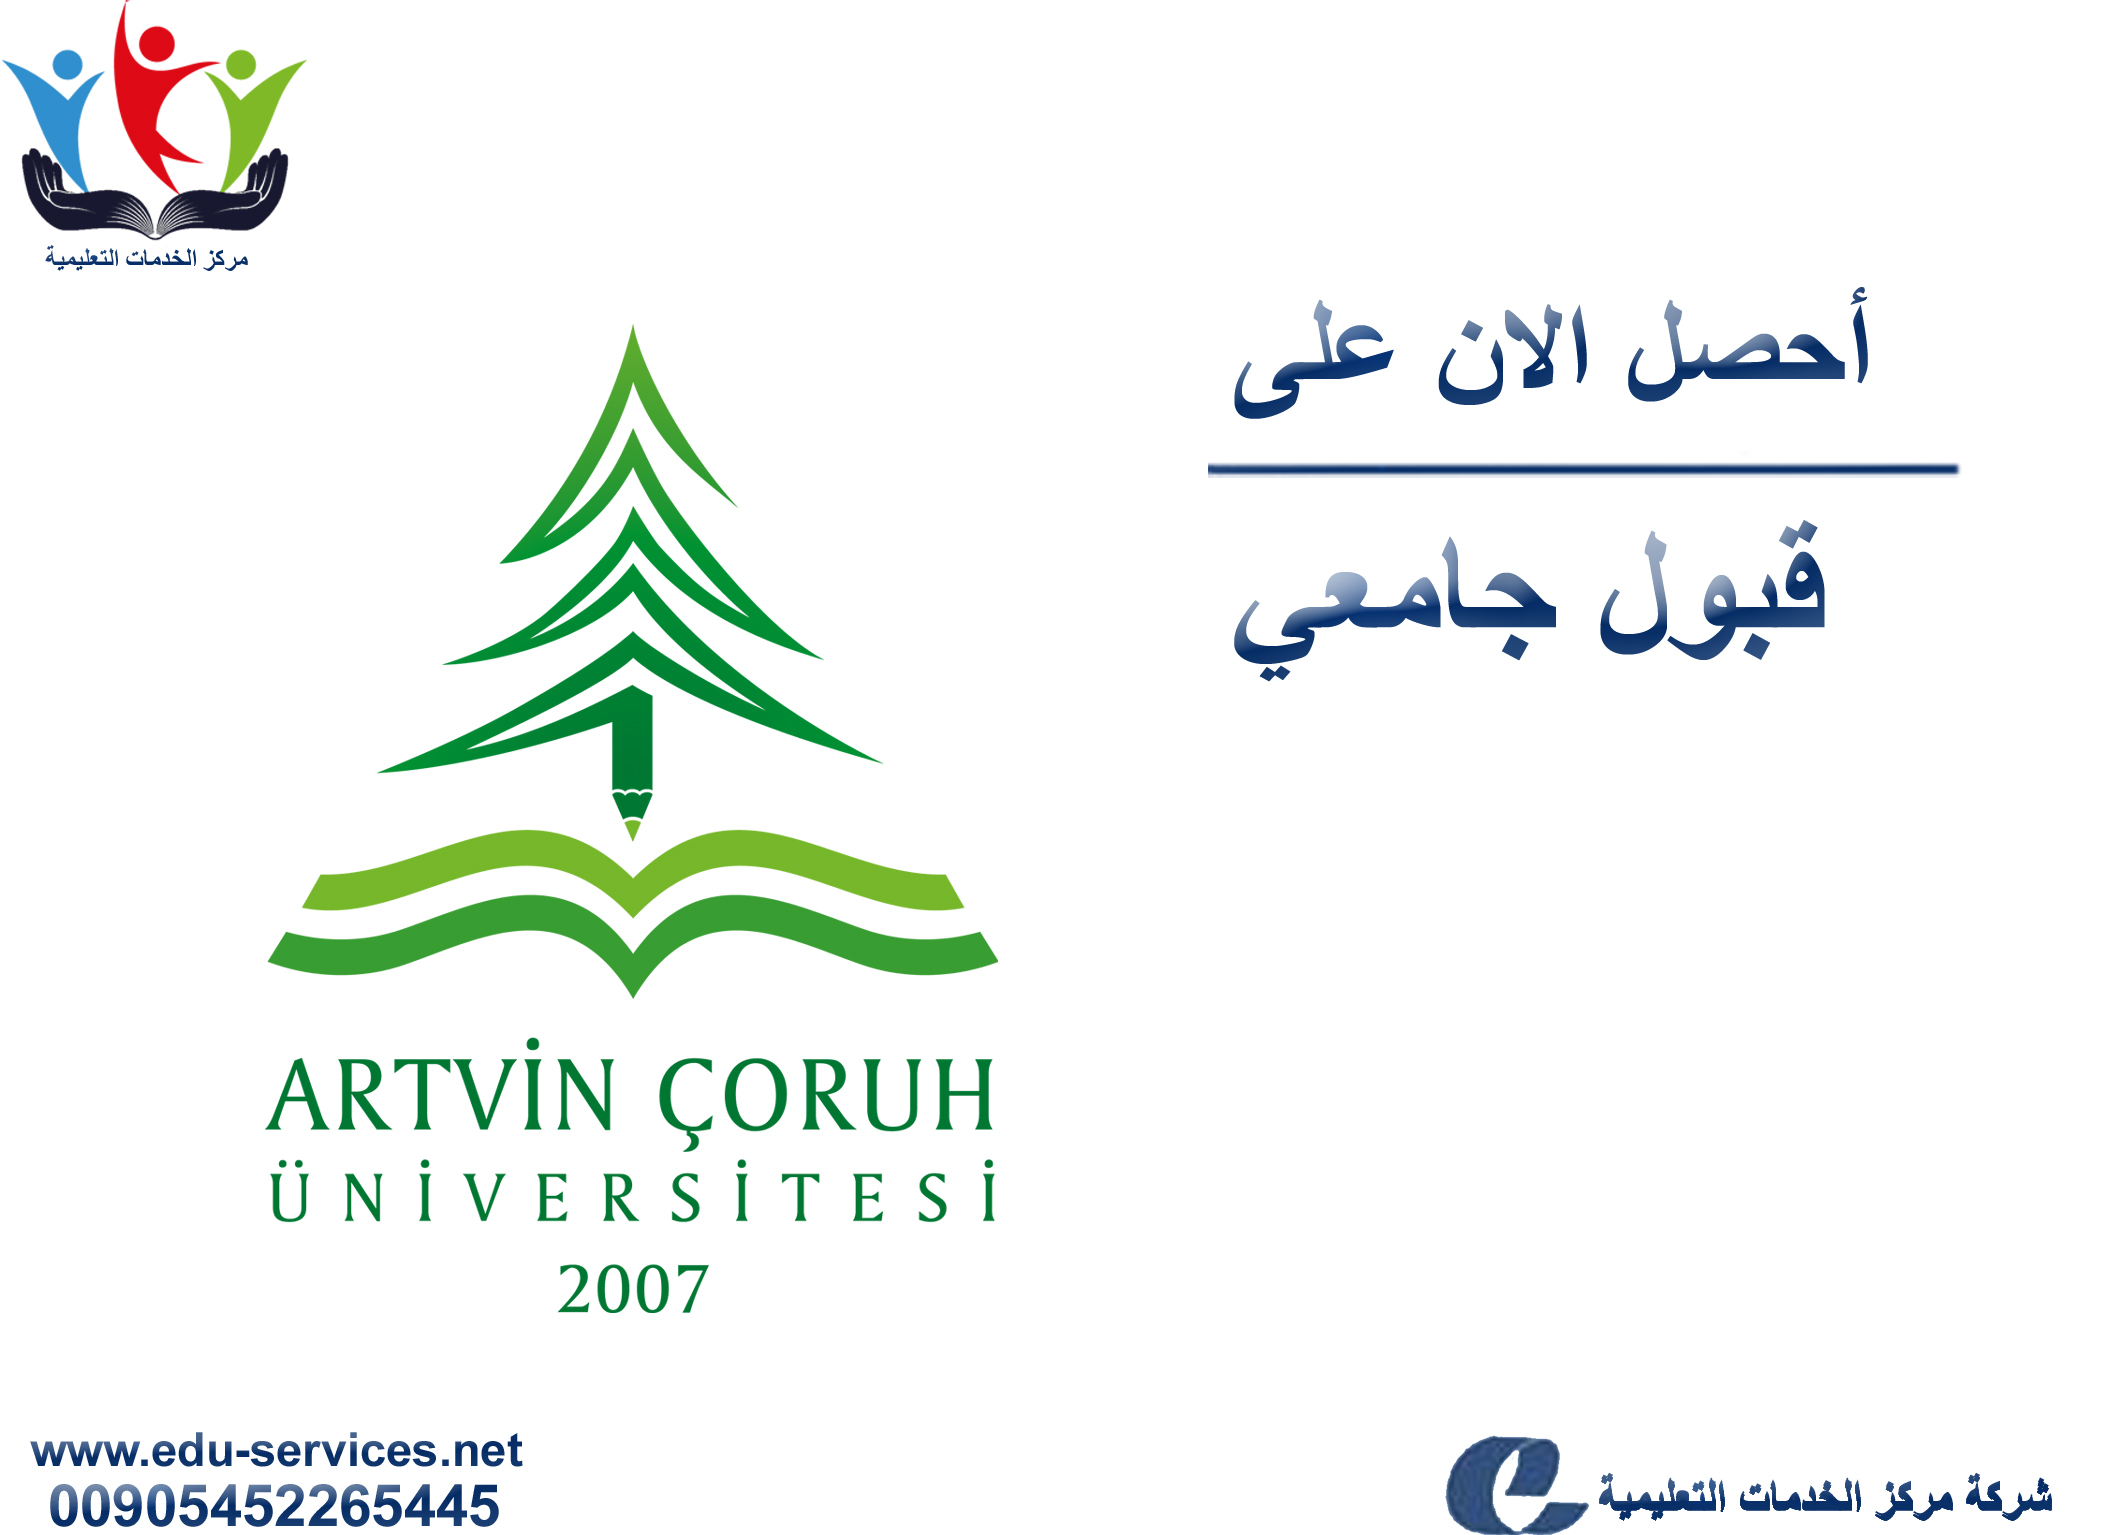 افتتاح التسجيل في جامعة تشوروه ارتفين للعام 2018-2019